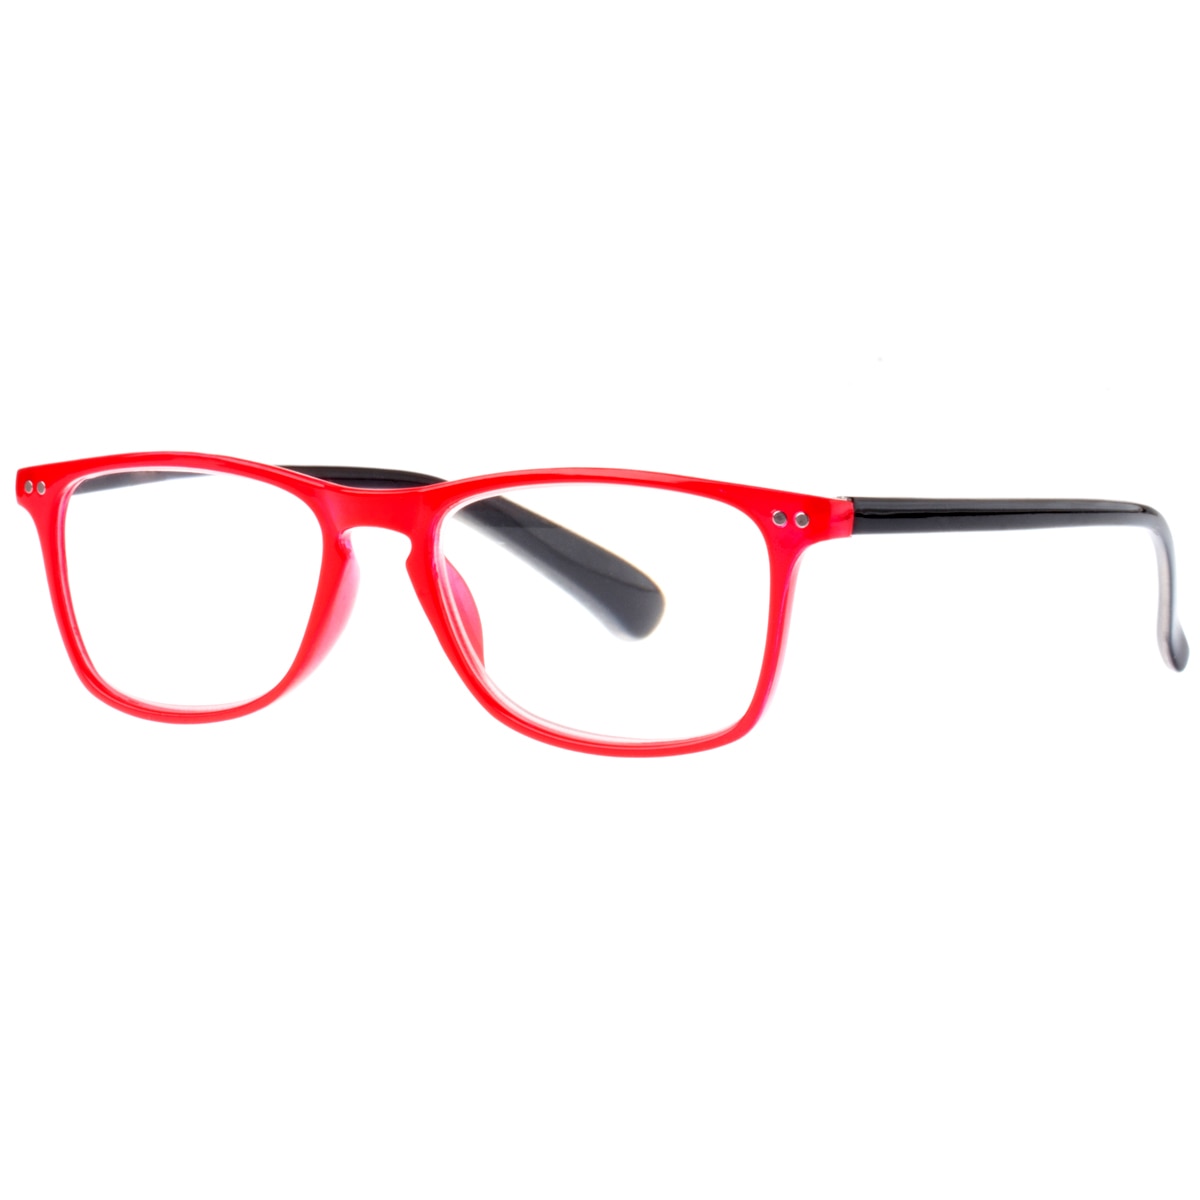 ahol ellenőrizheti látását és vásárolhat szemüveget